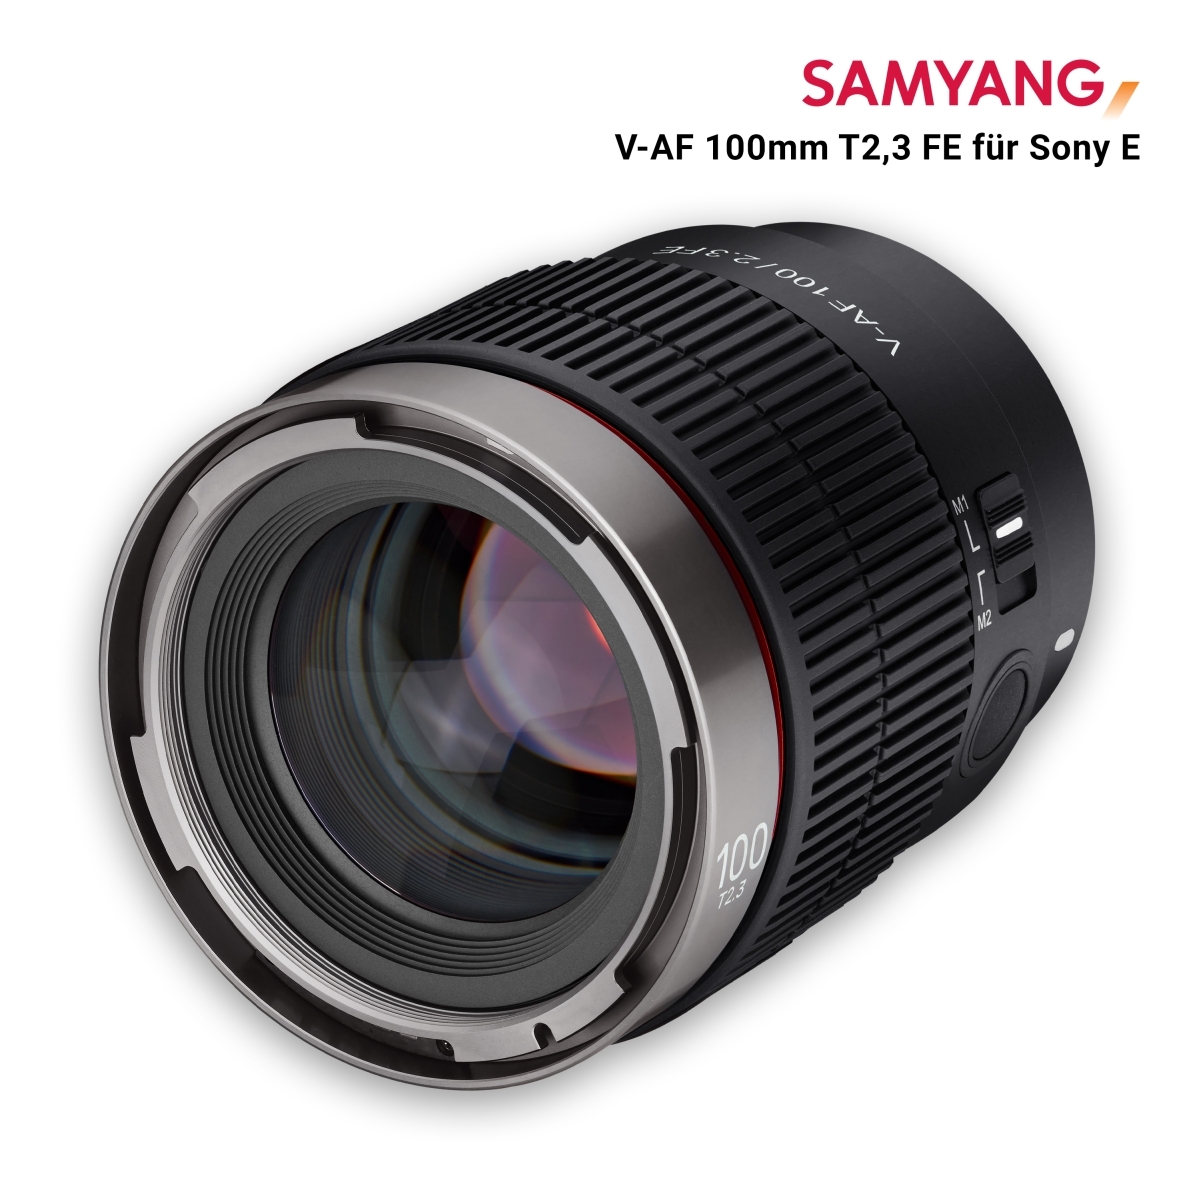 Samyang V-AF 100mm T2,3 FE for Sony E - walimex & walimex pro